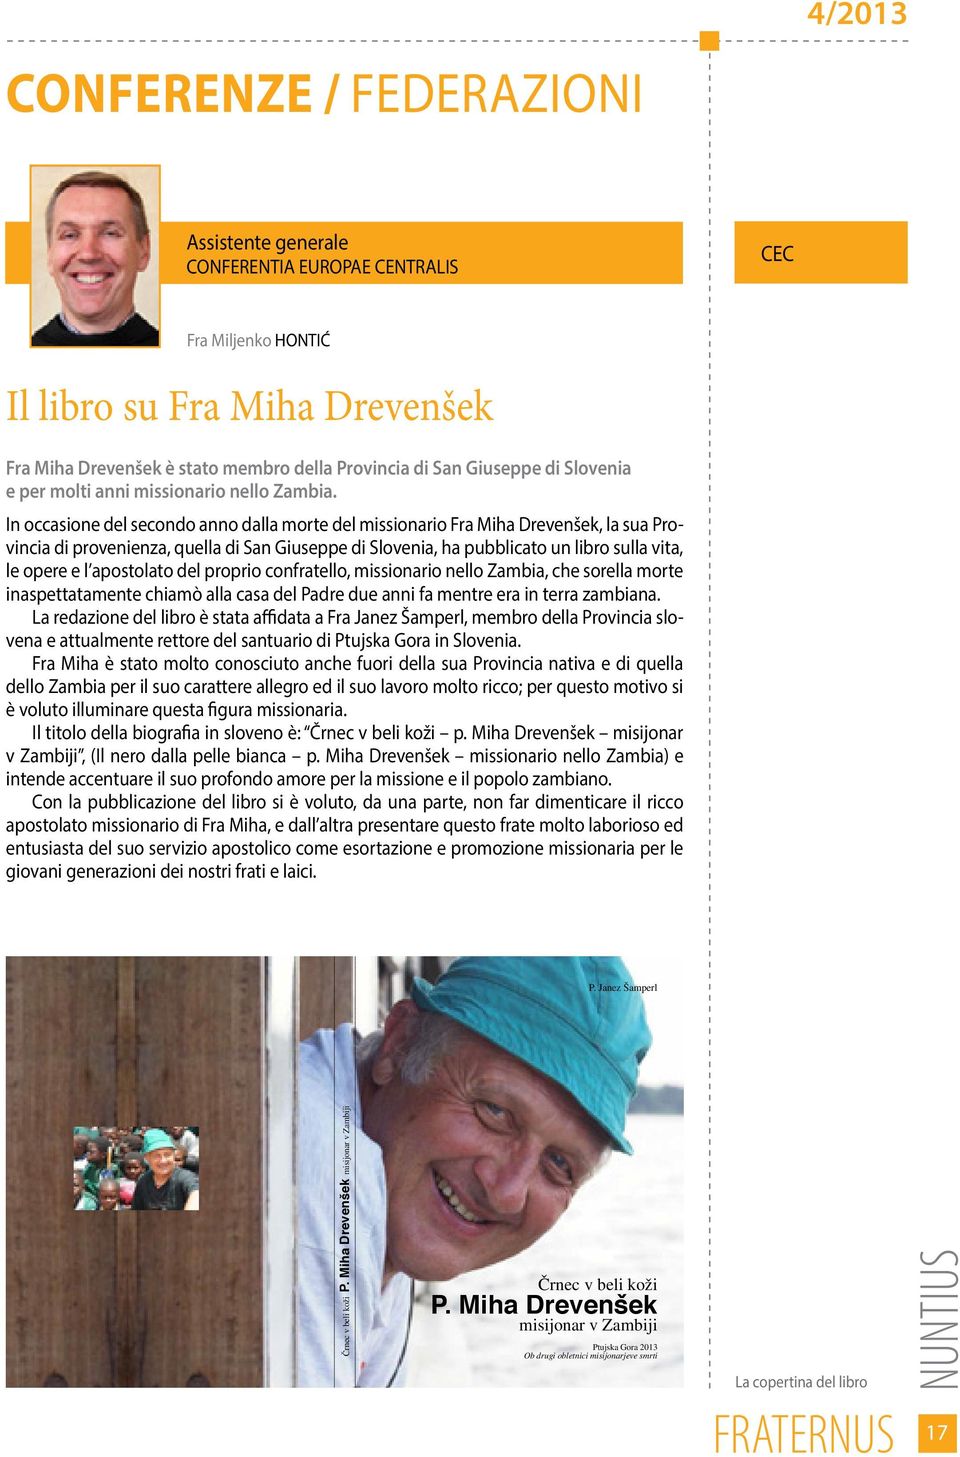 In occasione del secondo anno dalla morte del missionario Fra Miha Drevenšek, la sua Provincia di provenienza, quella di San Giuseppe di Slovenia, ha pubblicato un libro sulla vita, le opere e l